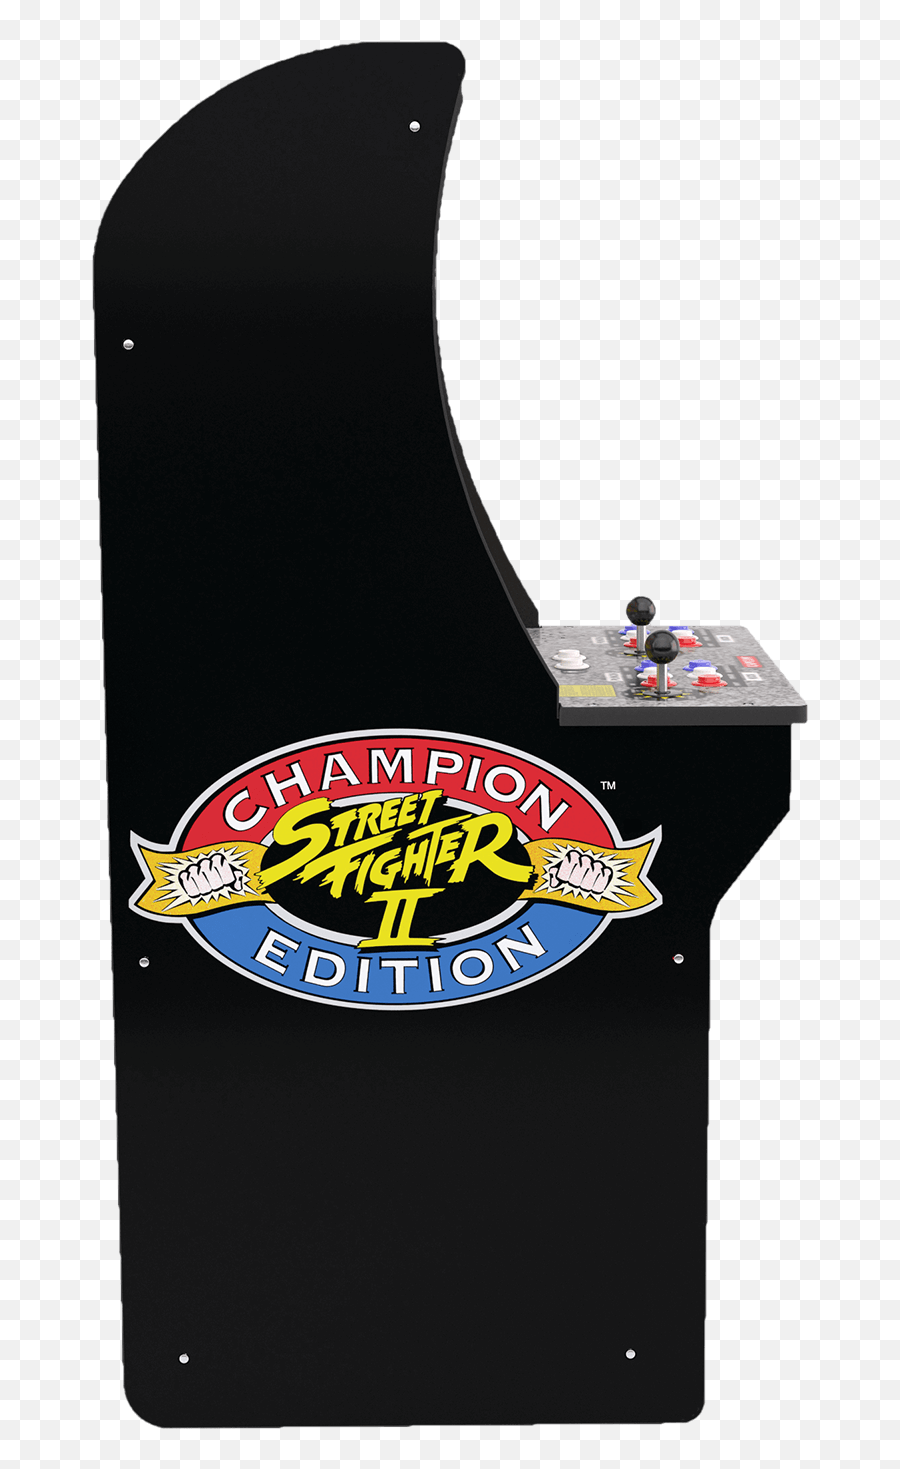 Street Fighter Arcade Machine - Arcade1up Street Fighter Emoji,Street Fighter 2 Moves List Emoticons